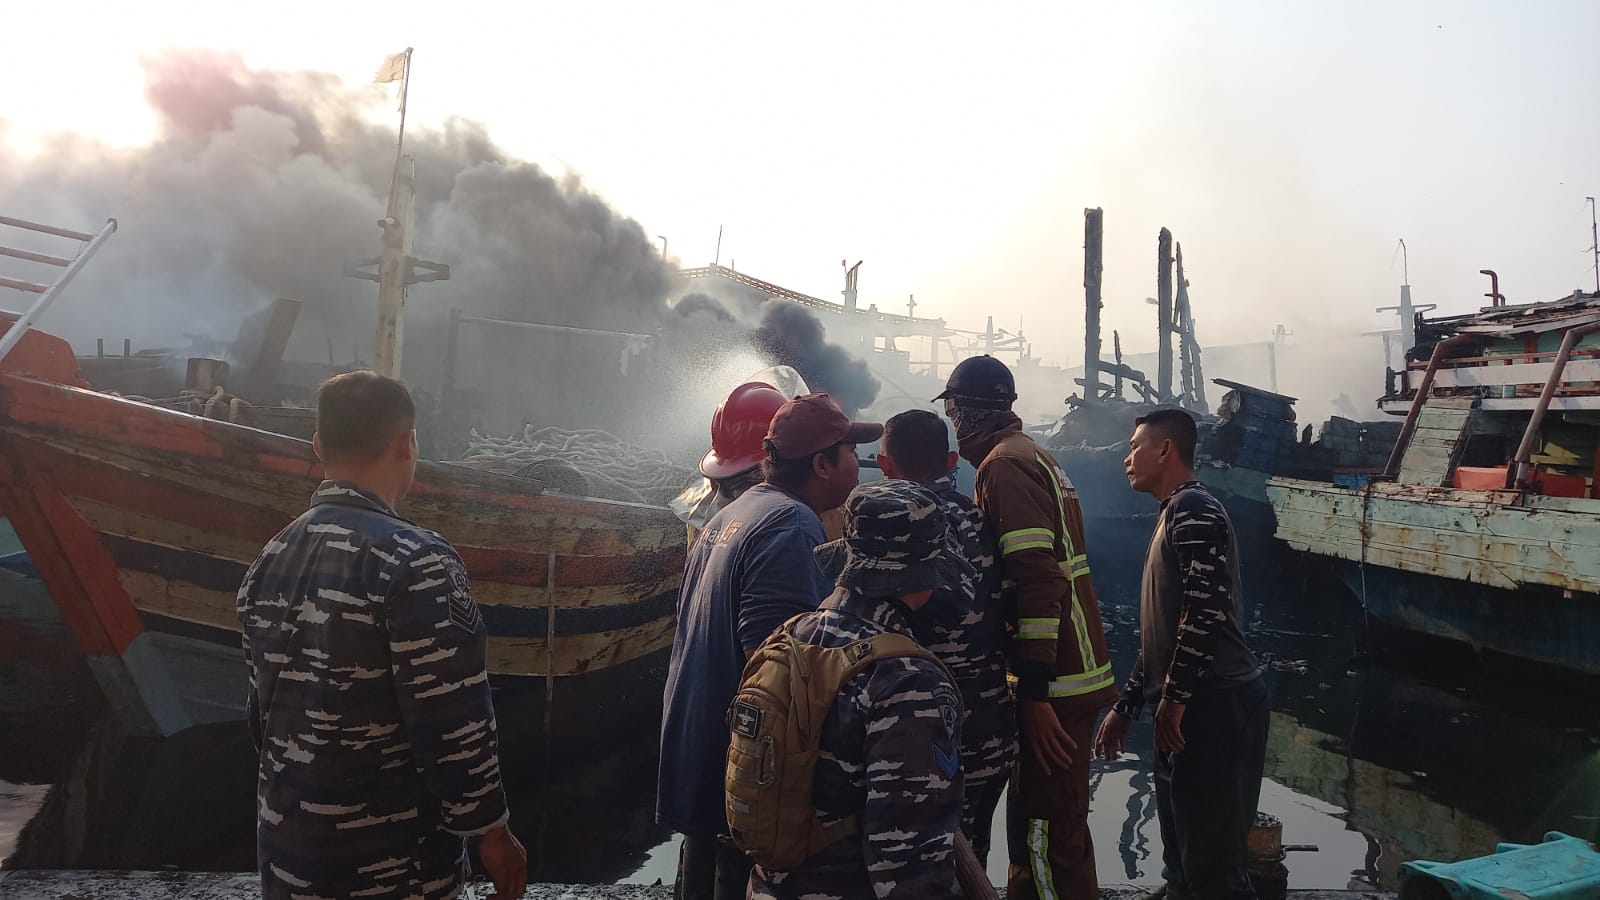 Sebabkan Kerugian Hingga Rp150 Miliar, Polda Jateng Selidiki Peristiwa Kapal Terbakar di Pelabuhan Tegal